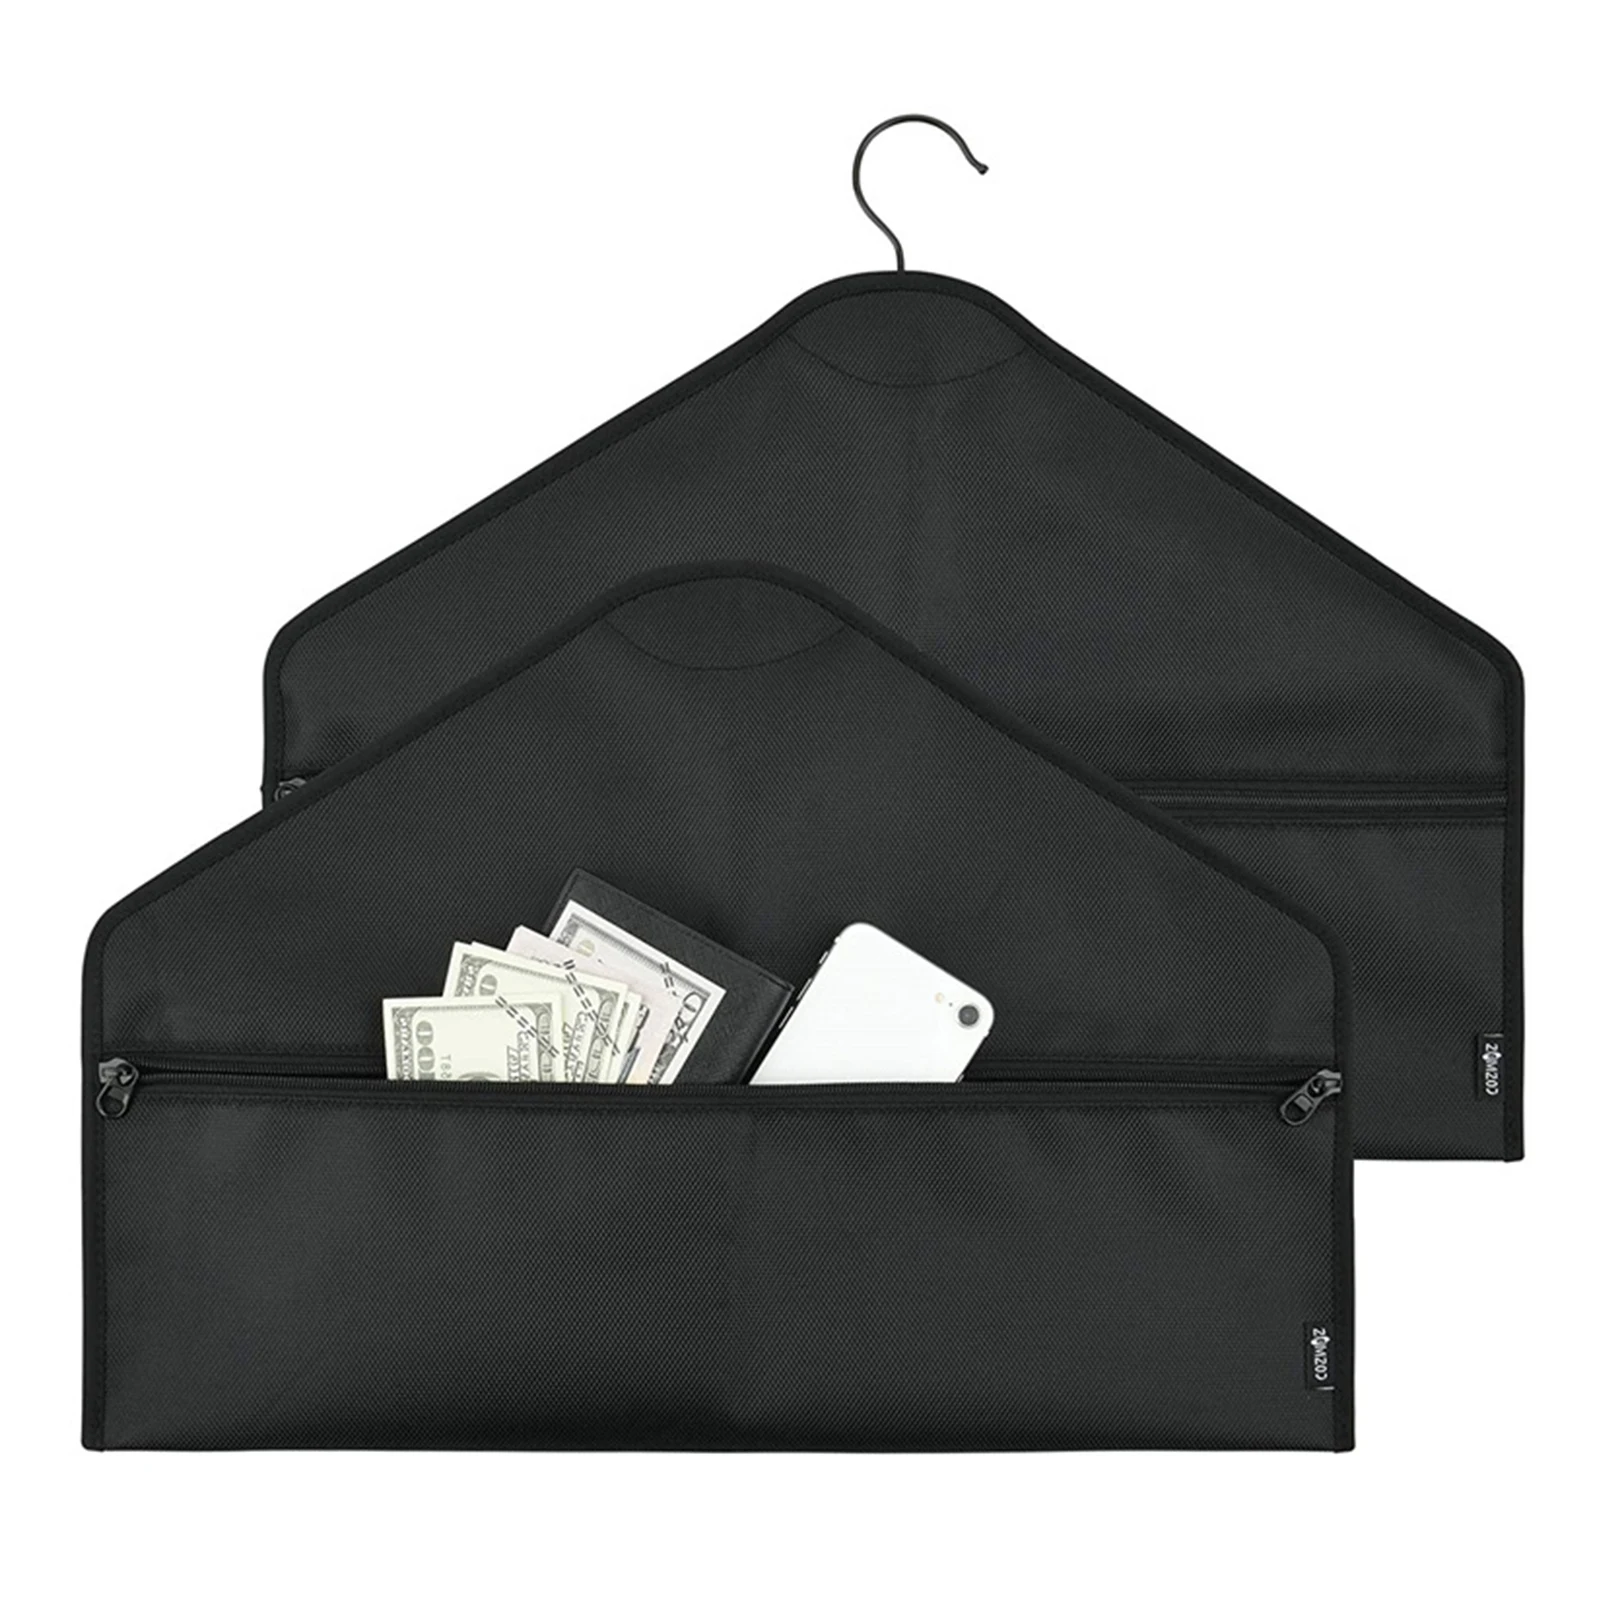 Hanger Diversion Safe Fireproof & Water-resistant Safe Pocket Secret Document Safe Holder Zipper Pouch Storage Bag To Hide Valua